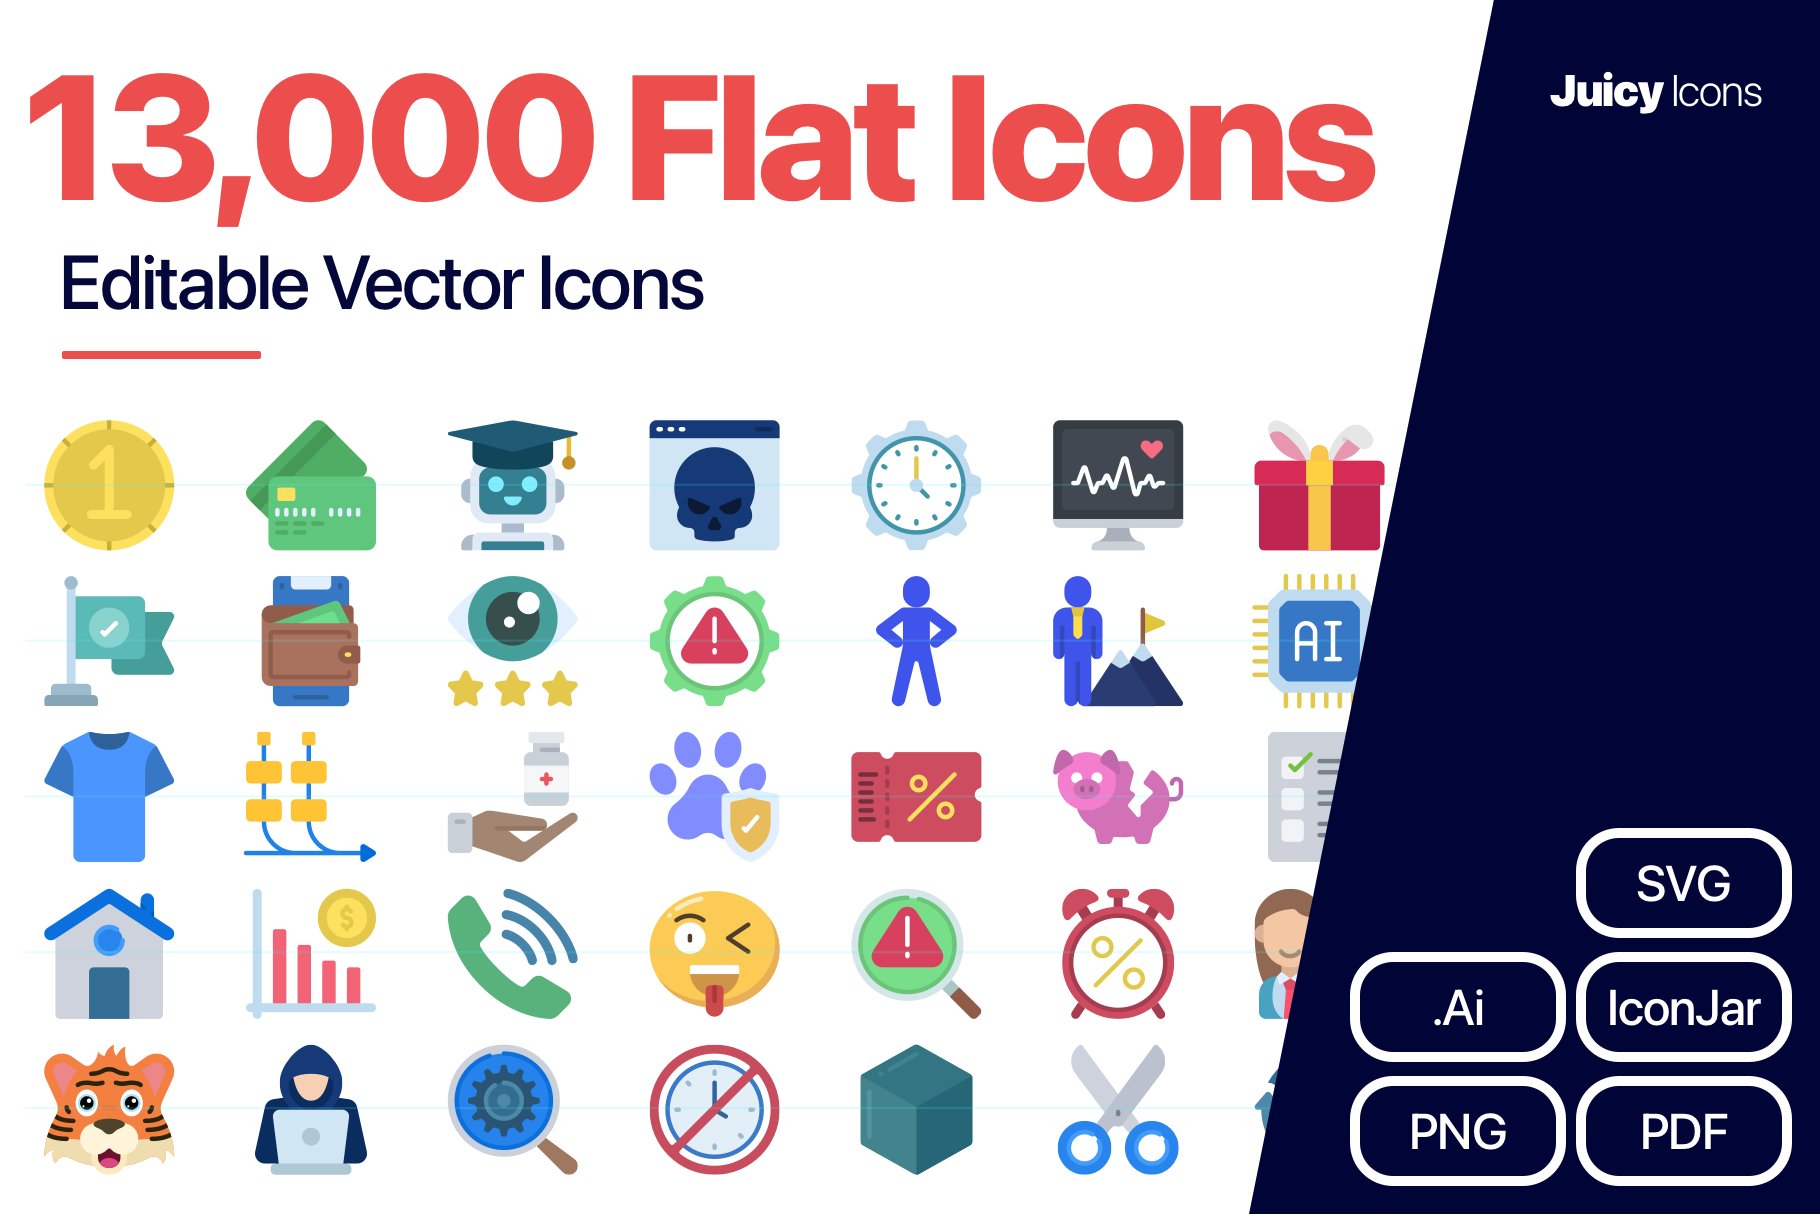 JuicyIcons Flat Bundle: 13,000 Icons cover image.